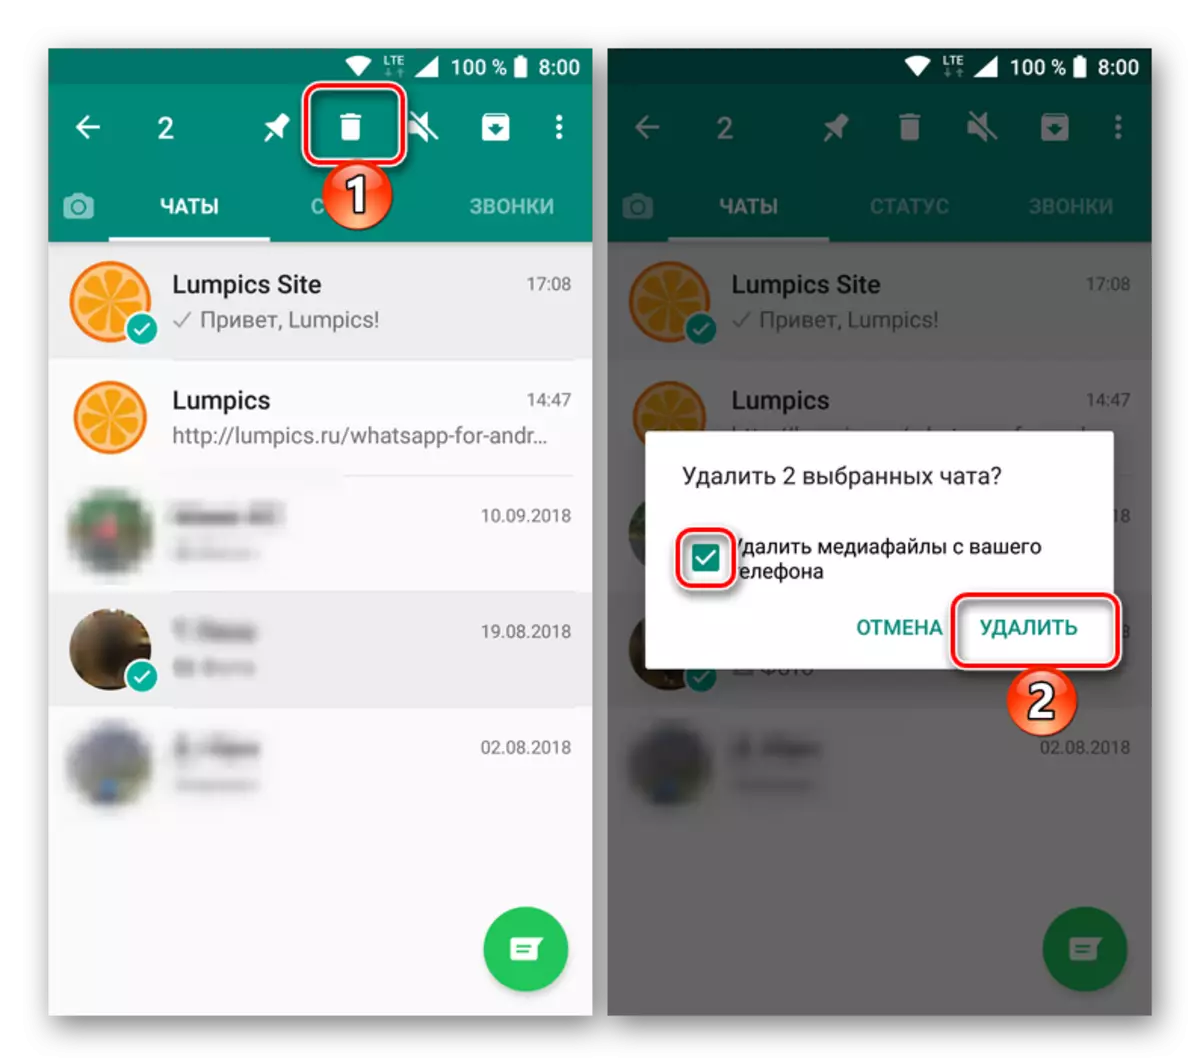 การกำจัดการแชทที่เลือกหลายรายการใน Vatsap Messenger สำหรับ Android